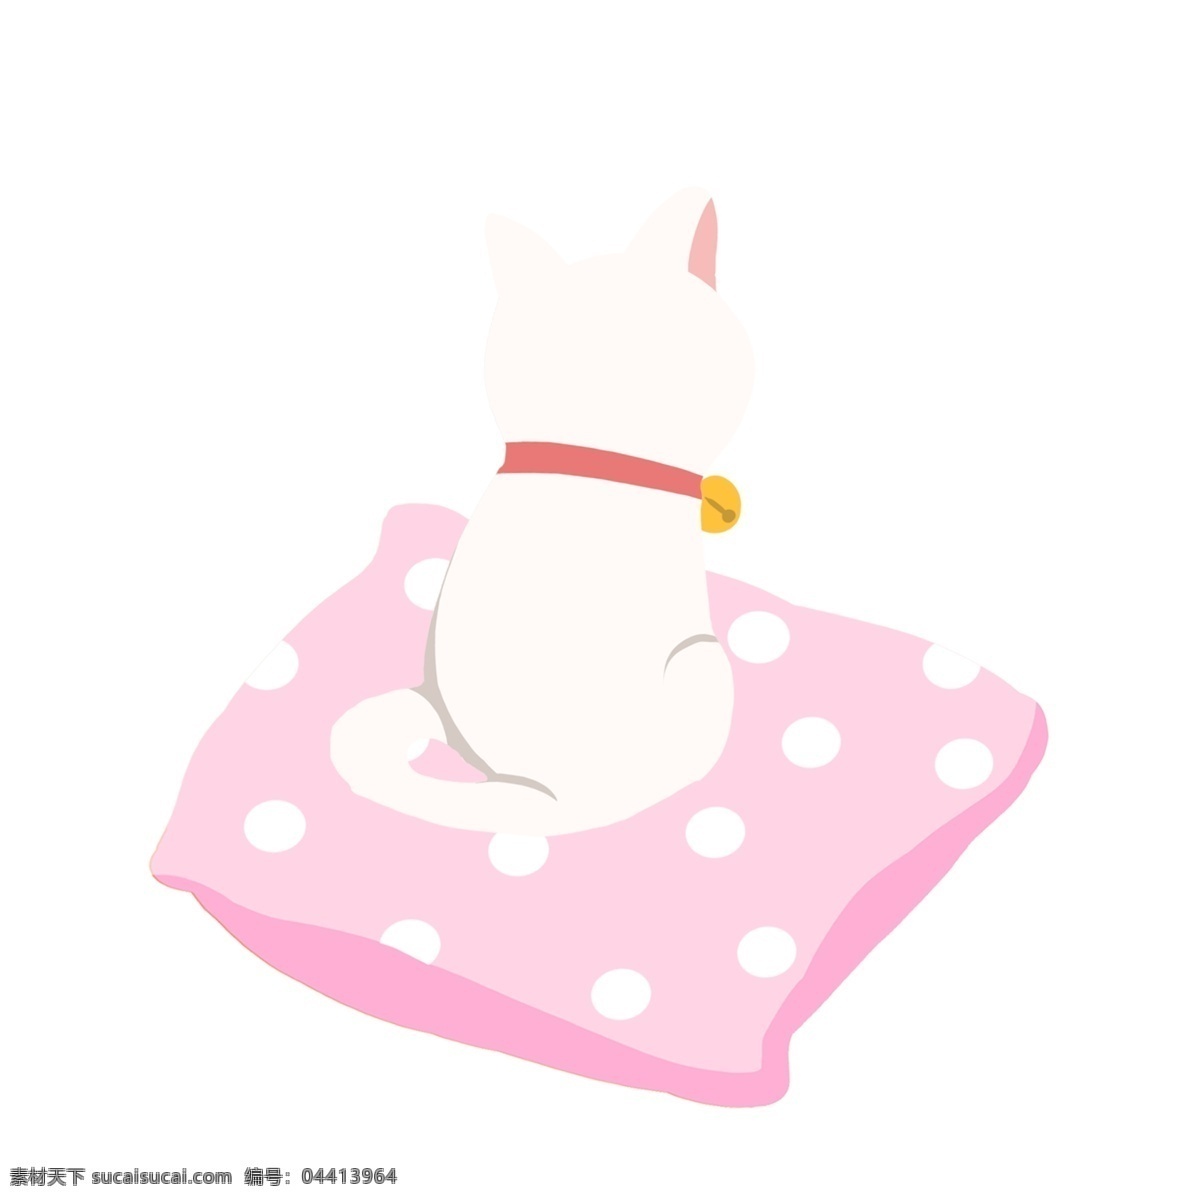 粉色 垫子 上 猫咪 图案 白猫 招财猫 粉色垫 设计元素 手绘 手绘元素 psd元素 免抠元素 动物